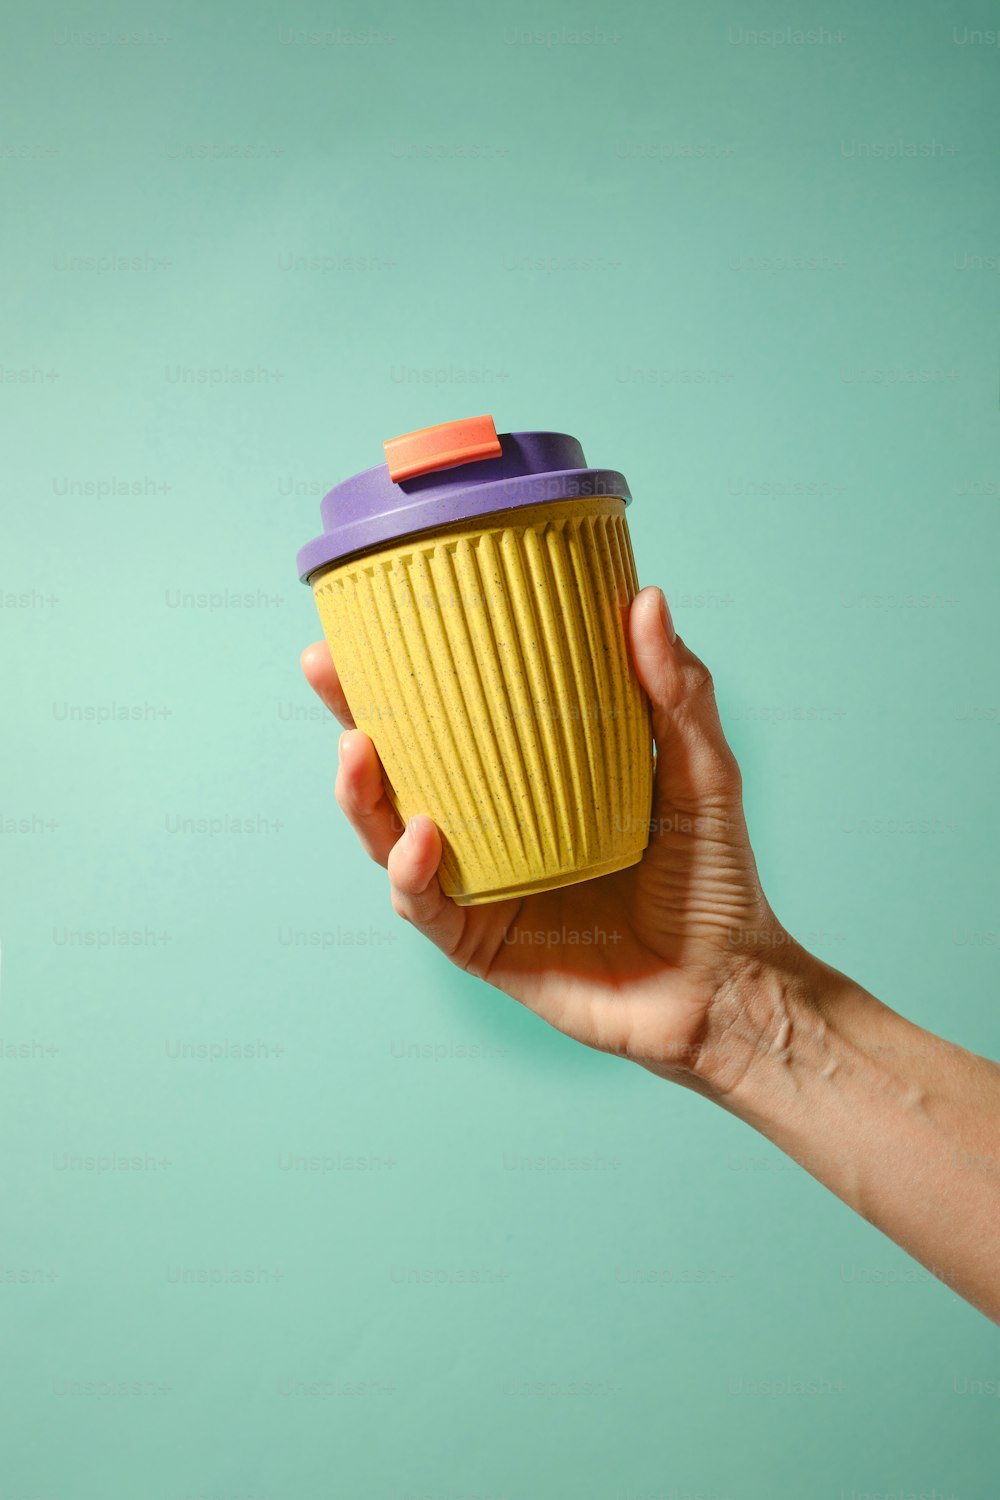 une main tenant une tasse jaune avec un couvercle violet